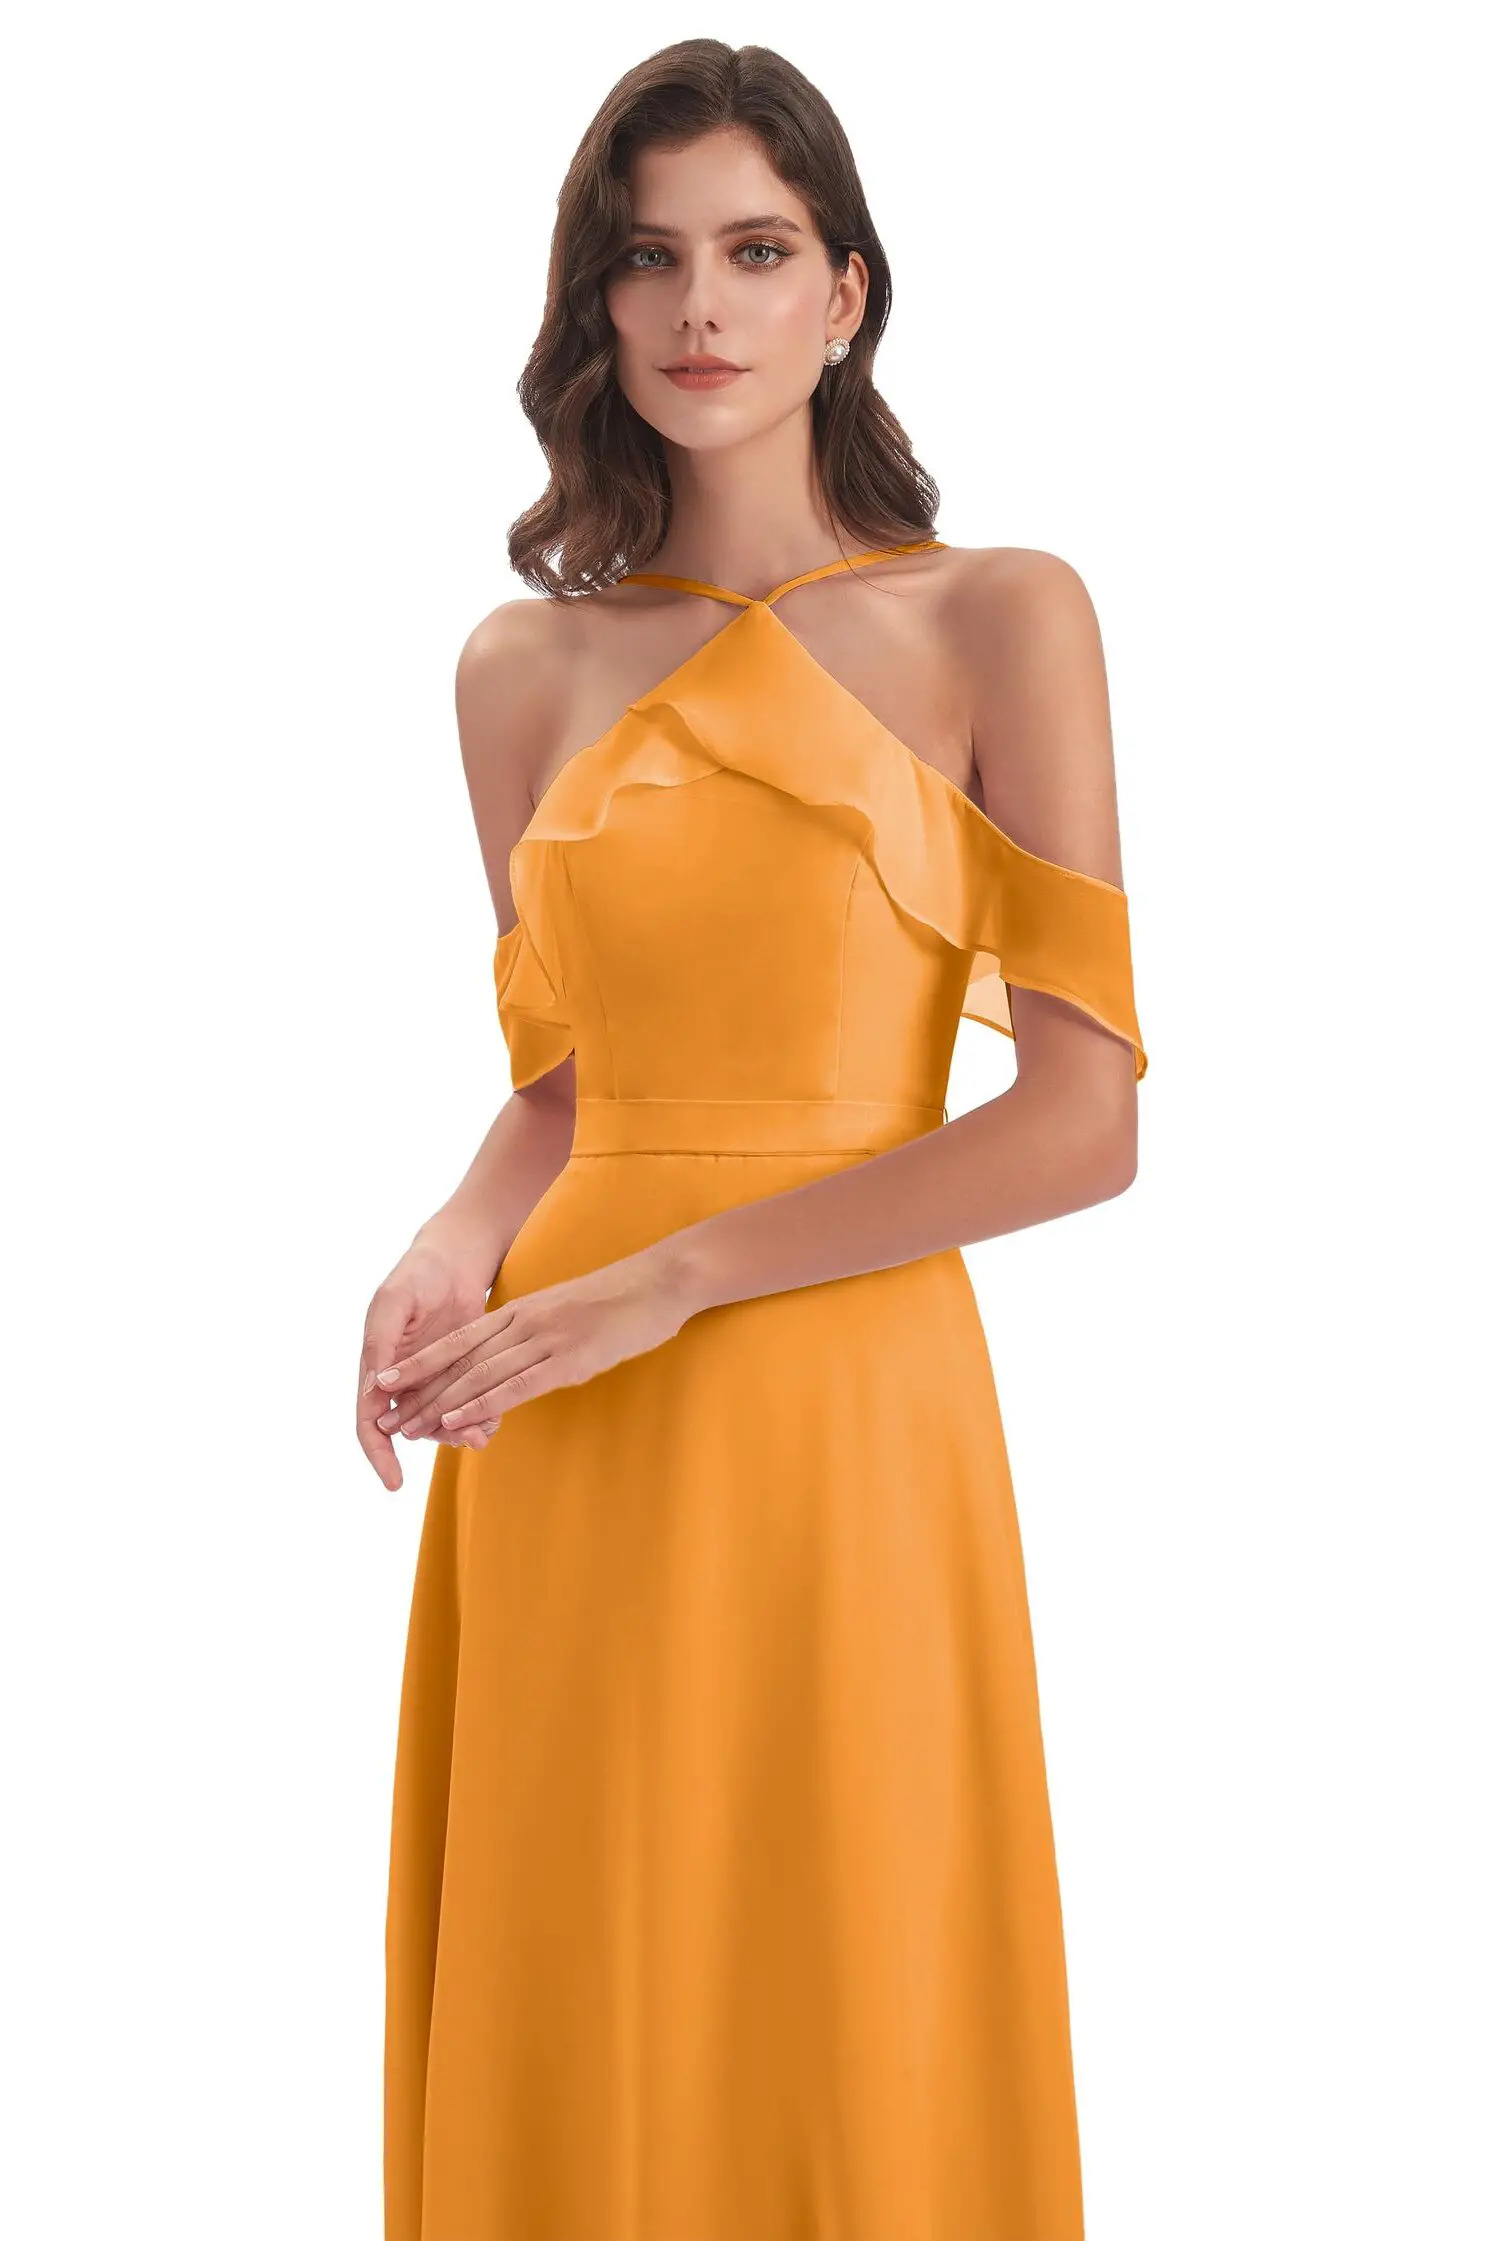 Colors for bridesmaid dresses in 2022 - Orange